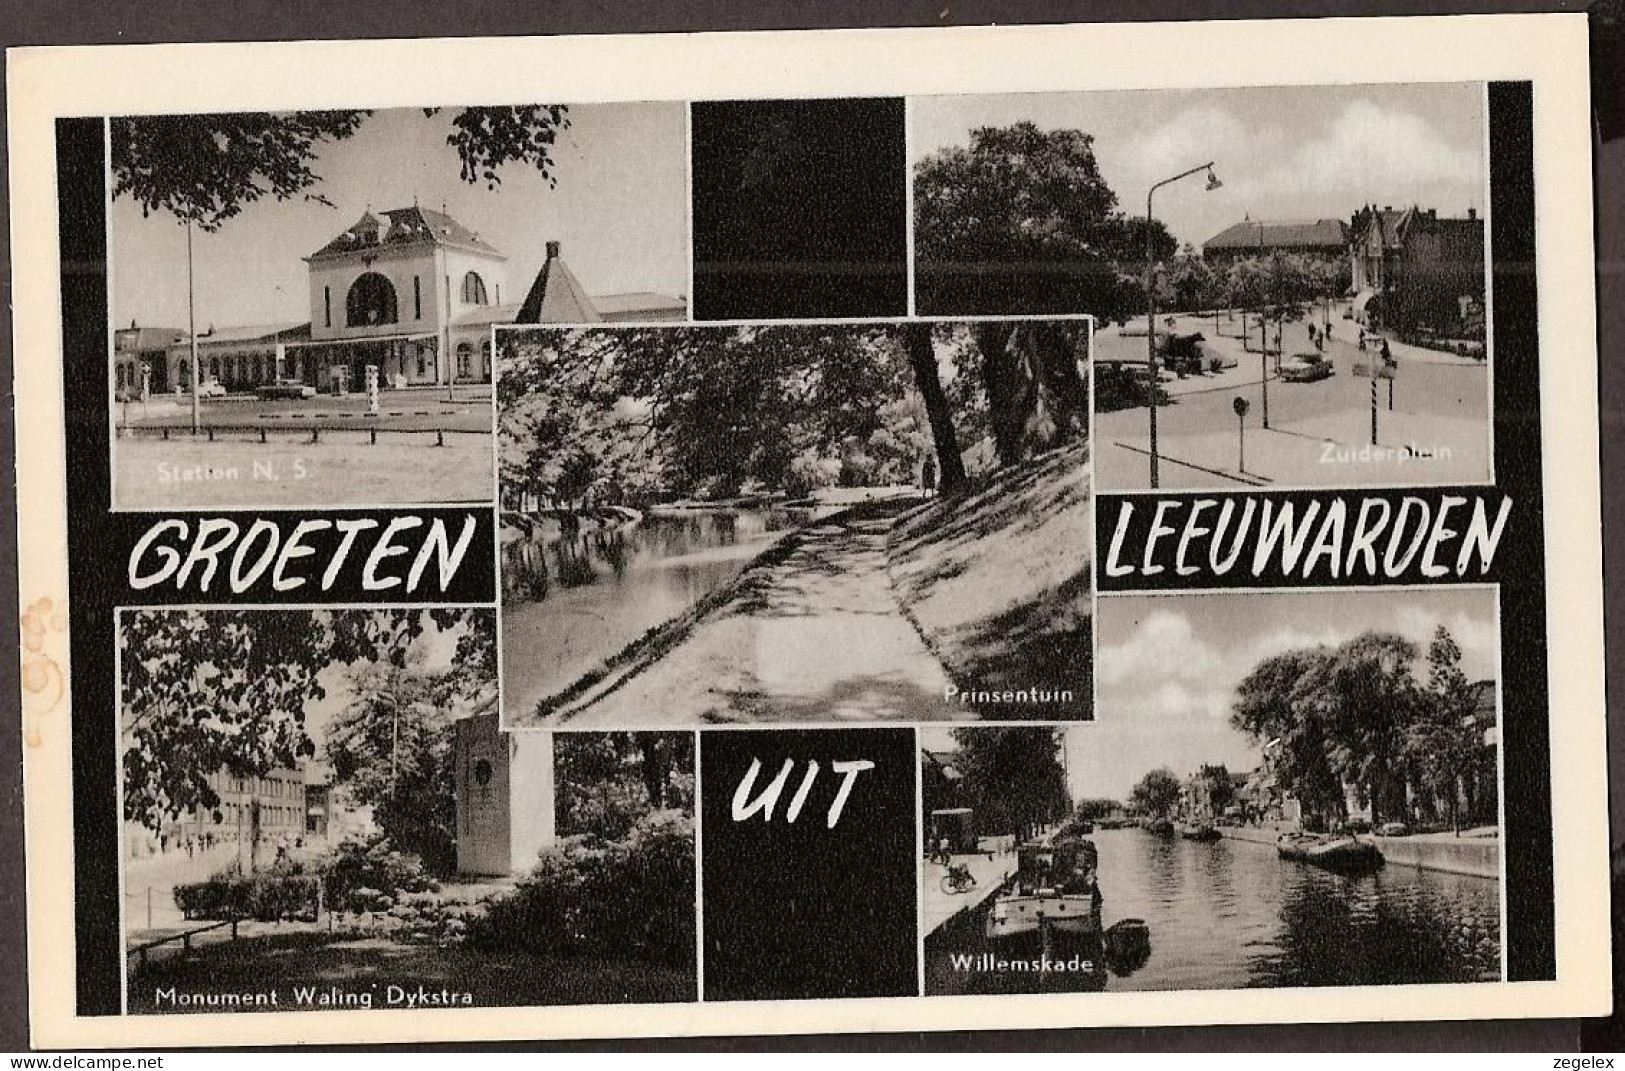 Leeuwarden - Station - Prinsentuin- Zuiderplein - Willemskade - Monument Waling Dykstra - Rond 1965 - Leeuwarden